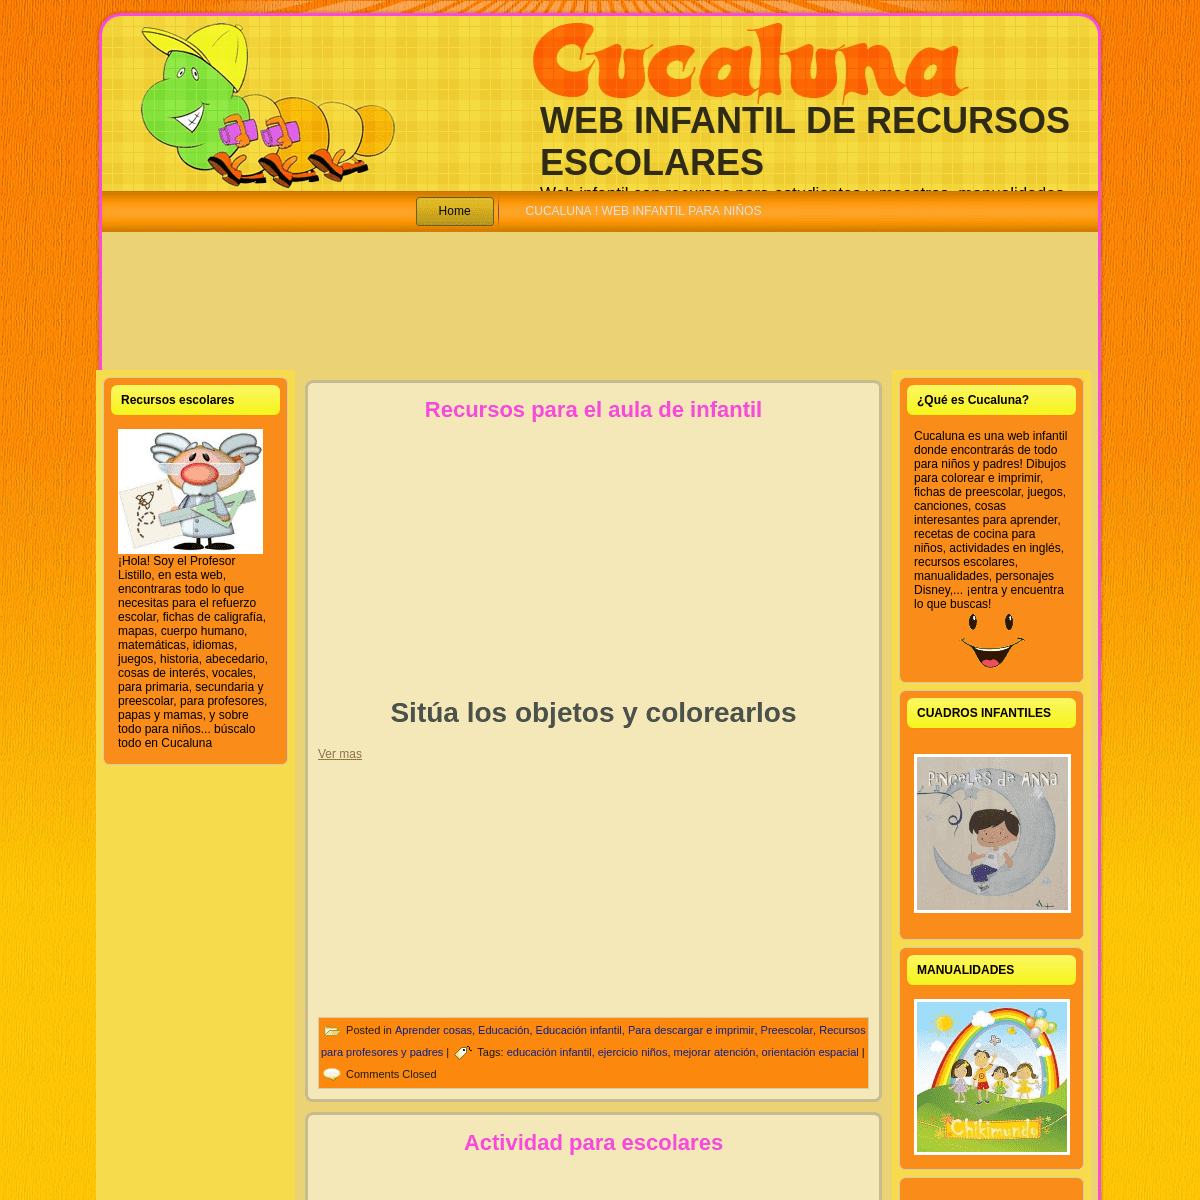 A complete backup of cucaluna.com